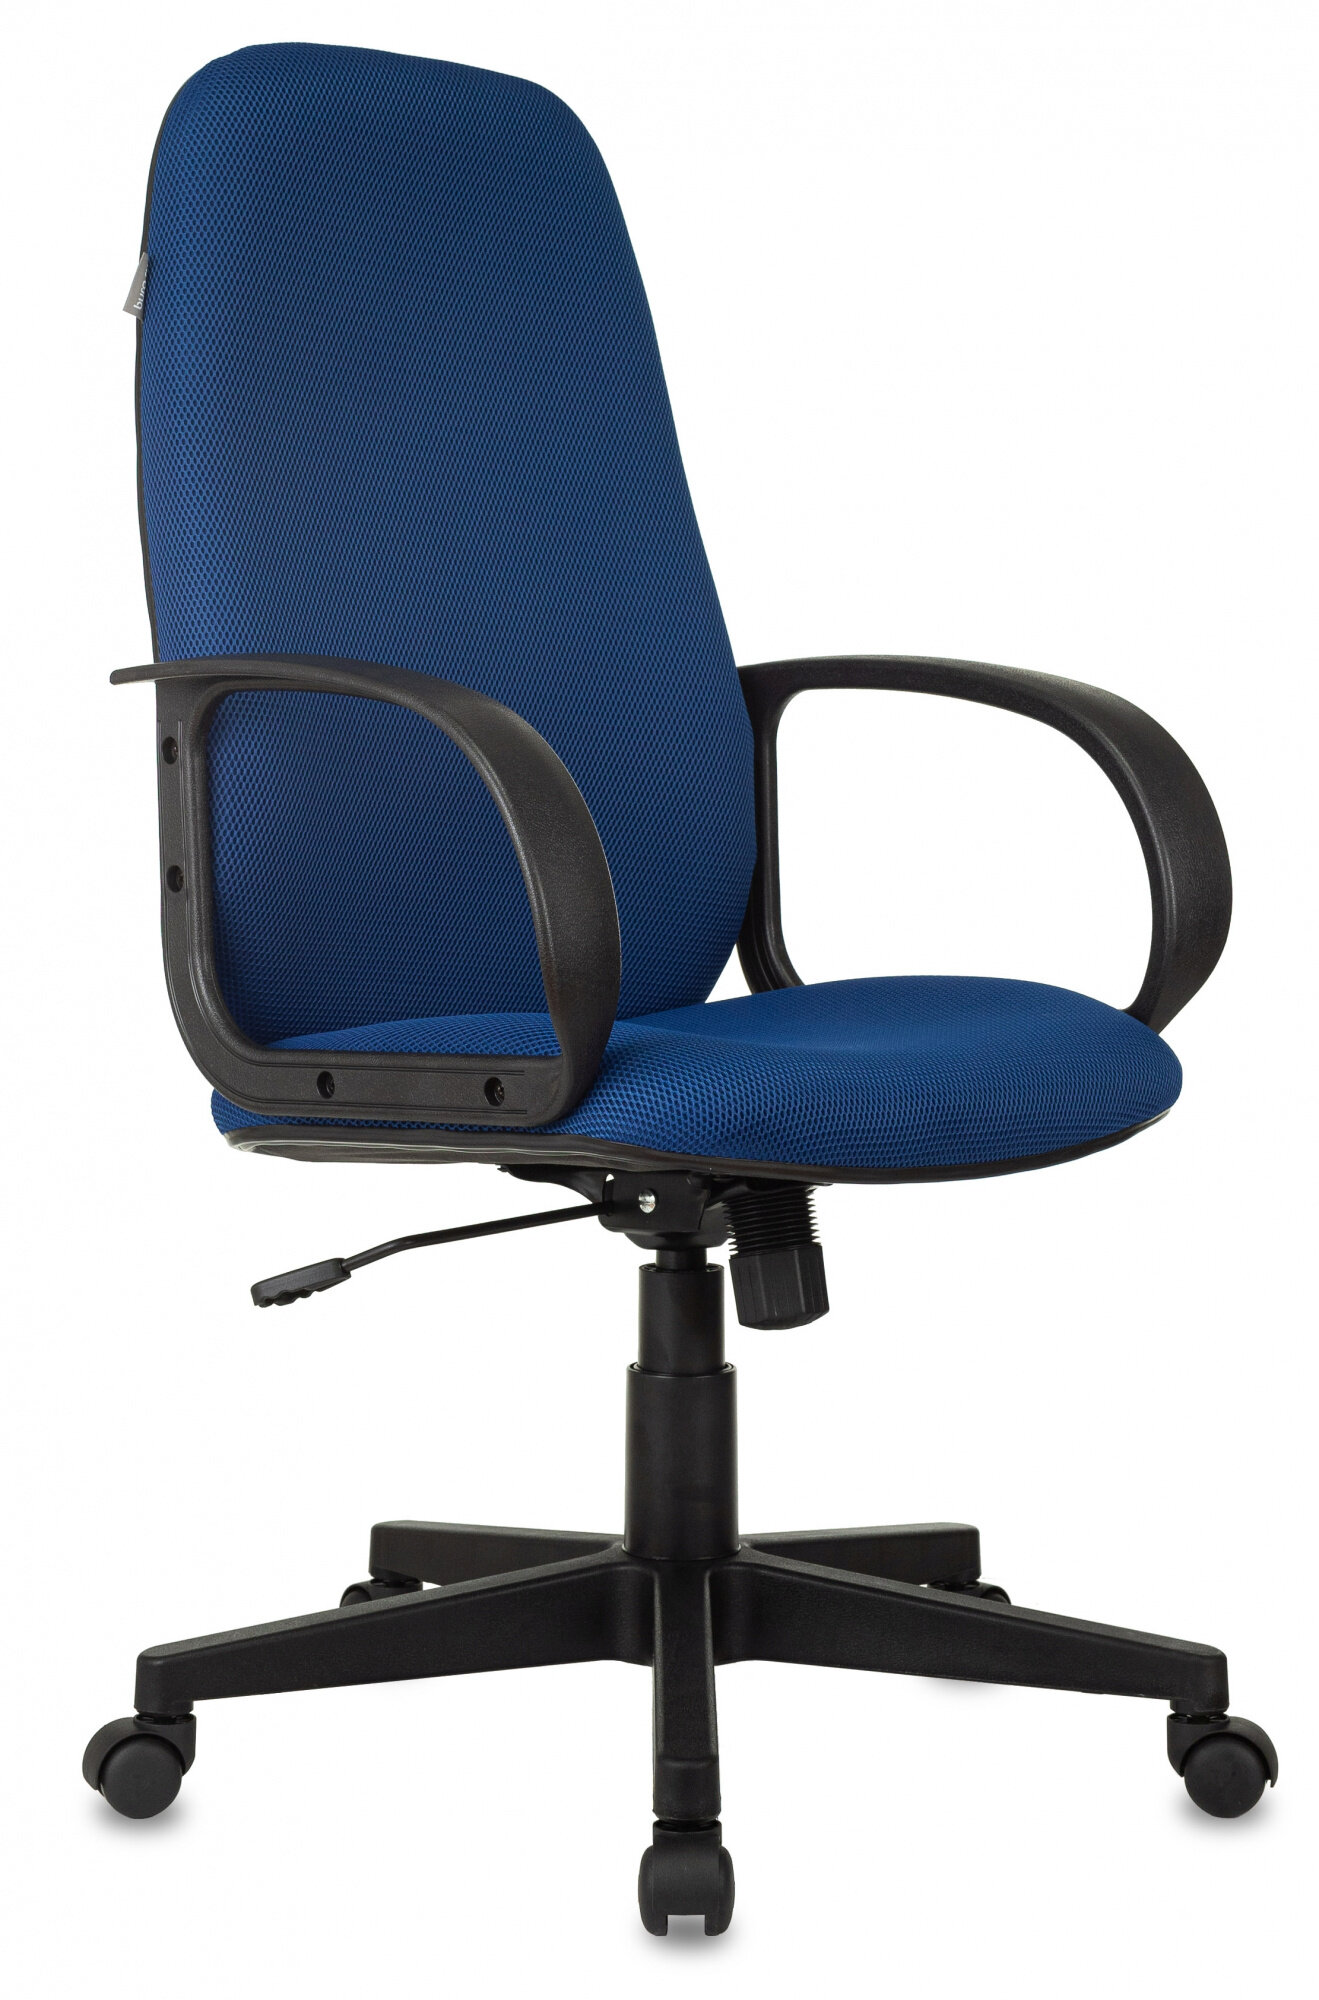 Кресло руководителя Ch-808AXSN синий TW-10 крестовина пластик CH-808AXSN/TW-10